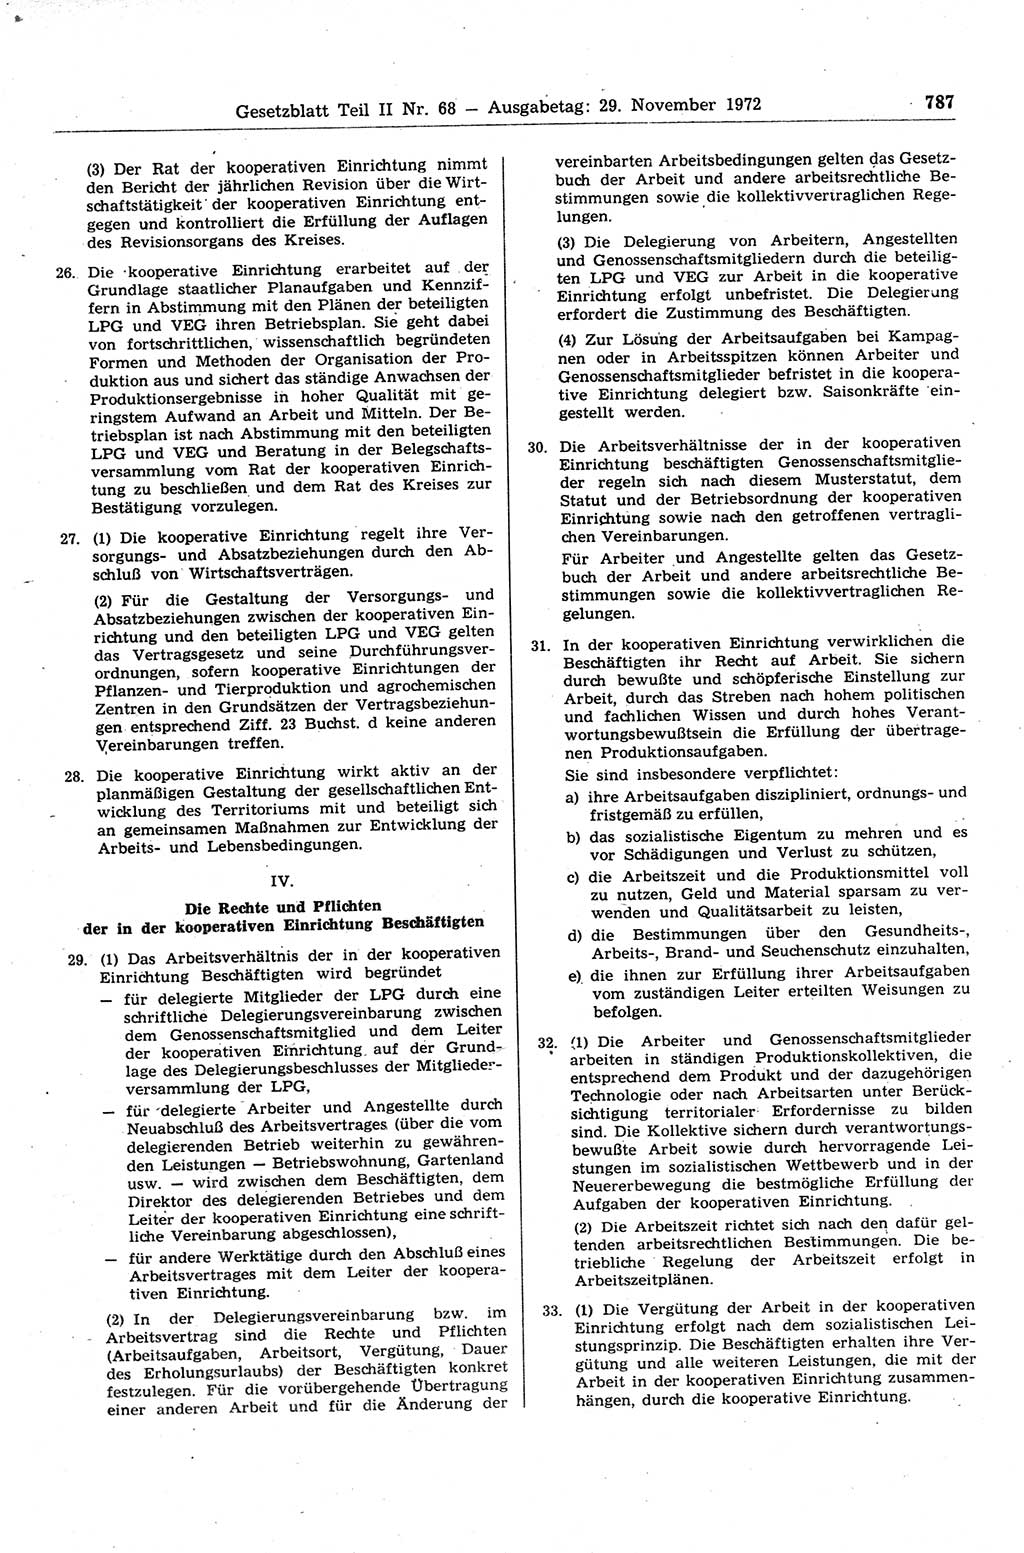 Gesetzblatt (GBl.) der Deutschen Demokratischen Republik (DDR) Teil ⅠⅠ 1972, Seite 787 (GBl. DDR ⅠⅠ 1972, S. 787)